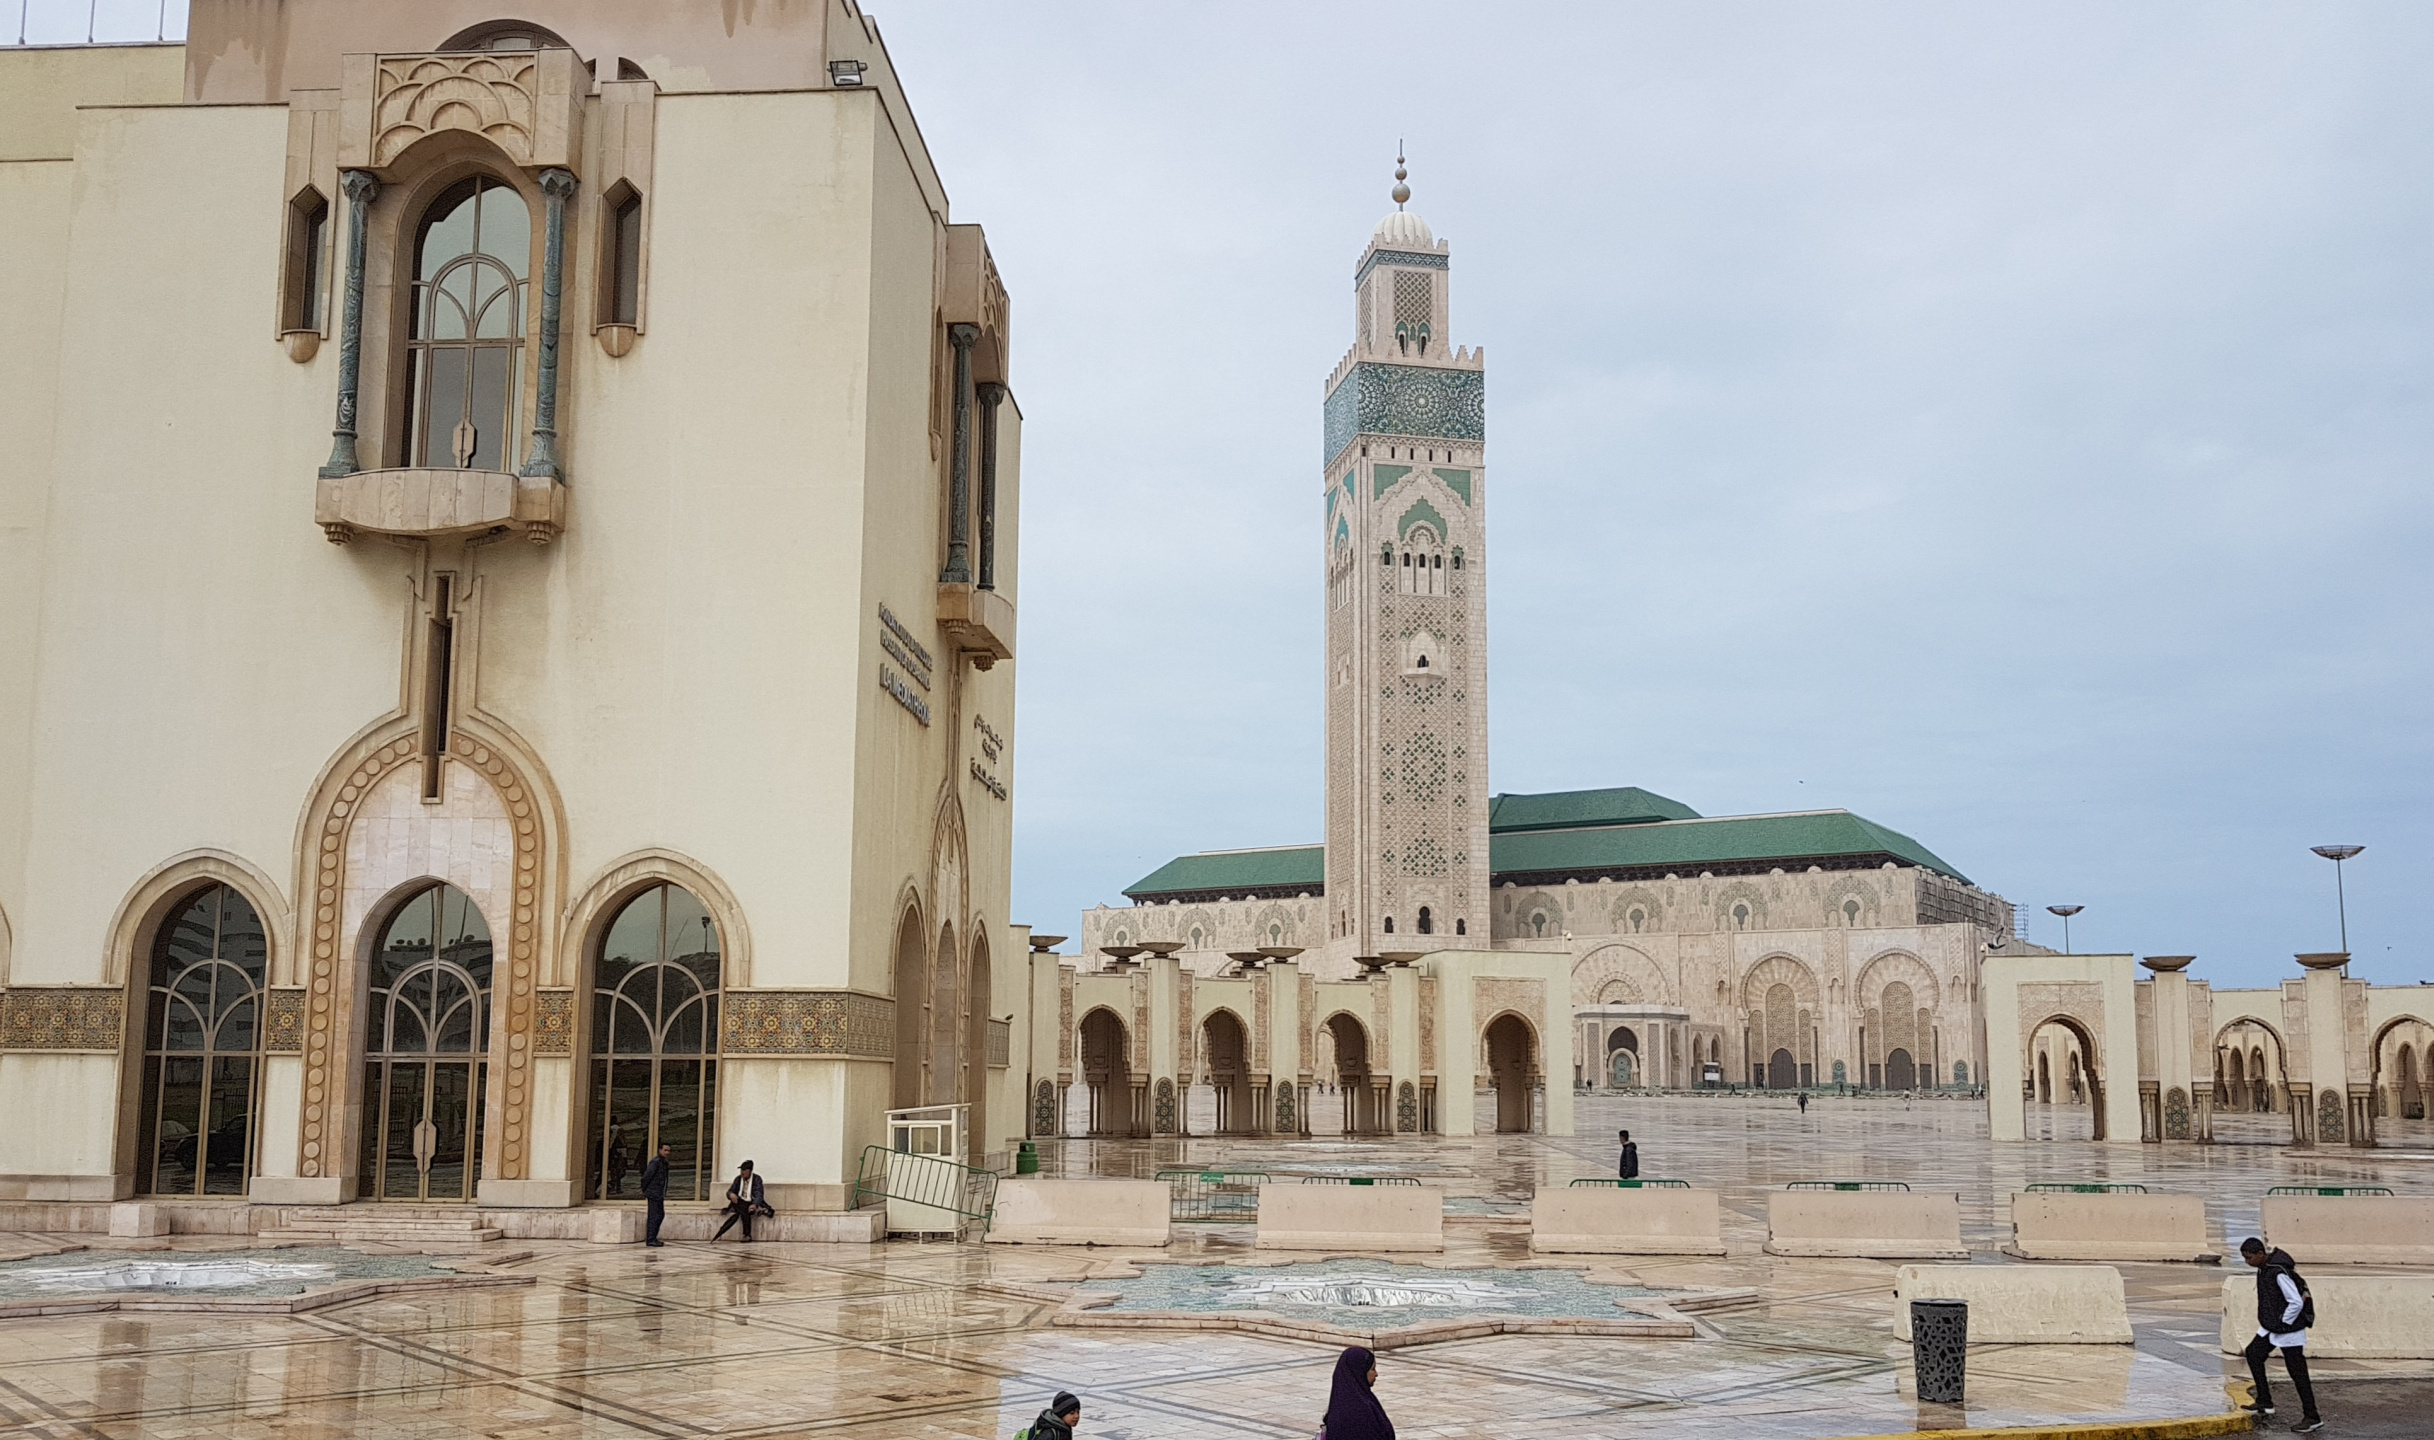 20180305-135028-Hasan_II_Mosque-Casablanca-SJ-2.jpg